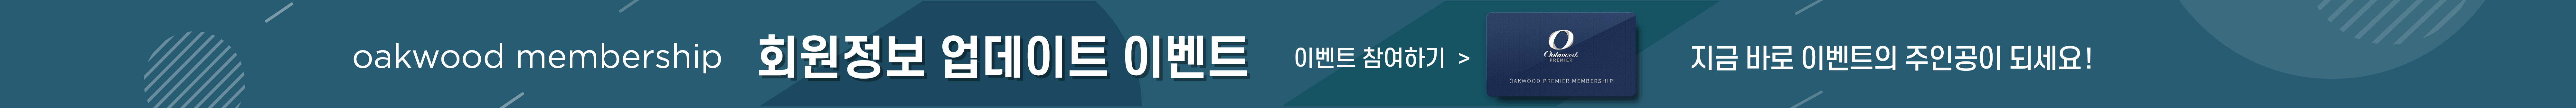 오크우드 통합 멤버십 신규 가입 이벤트 지금 바로 참여하기